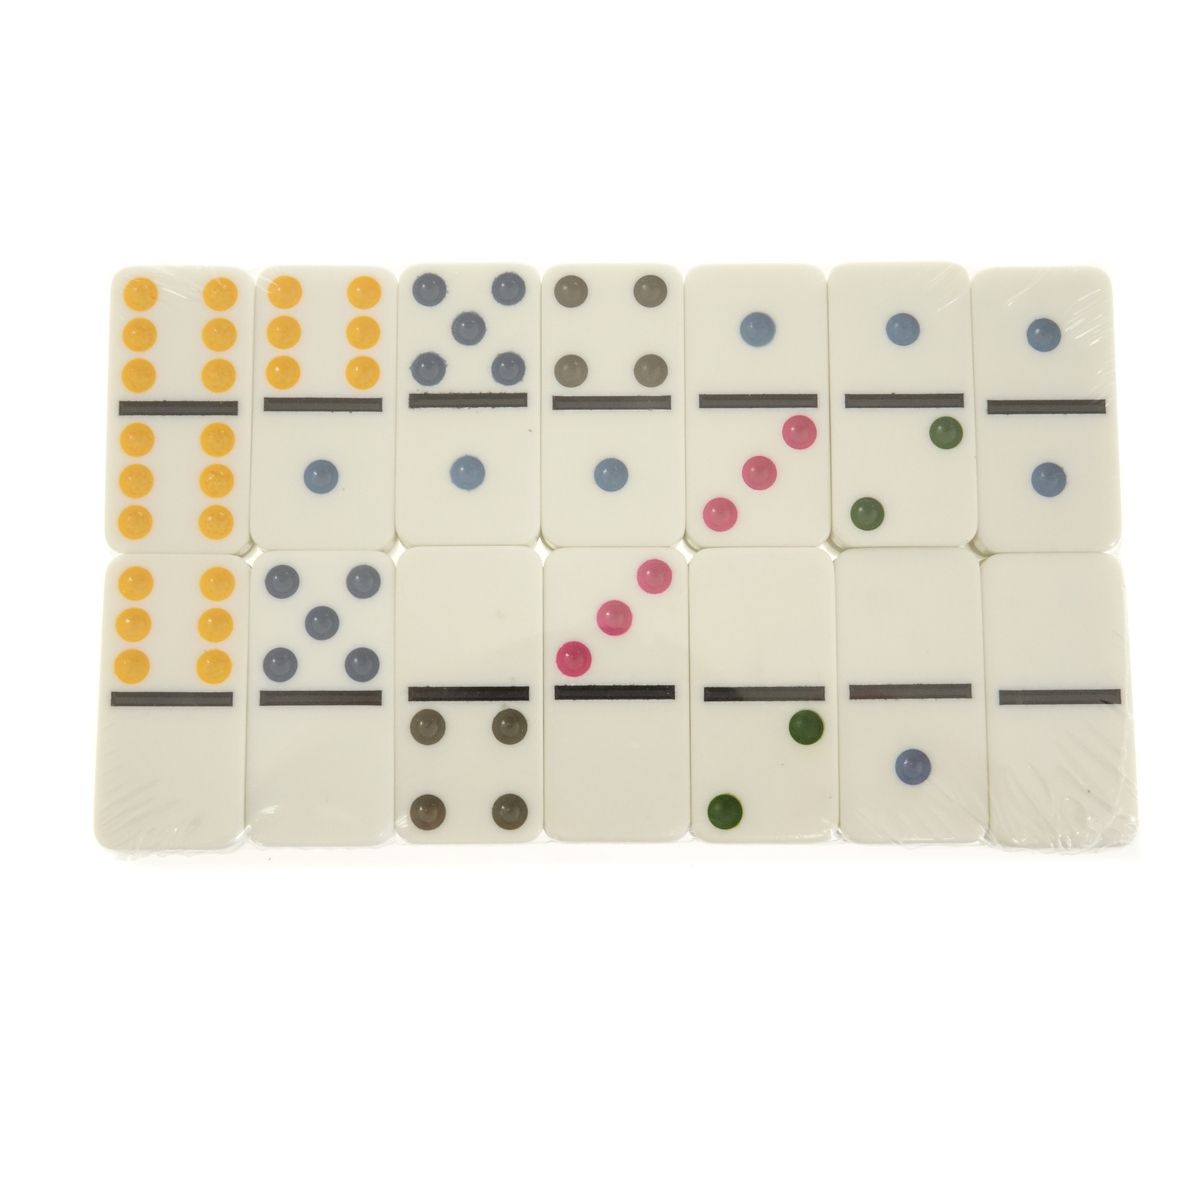 Gra logiczna Adar domino w metalowym pudełku (543607)